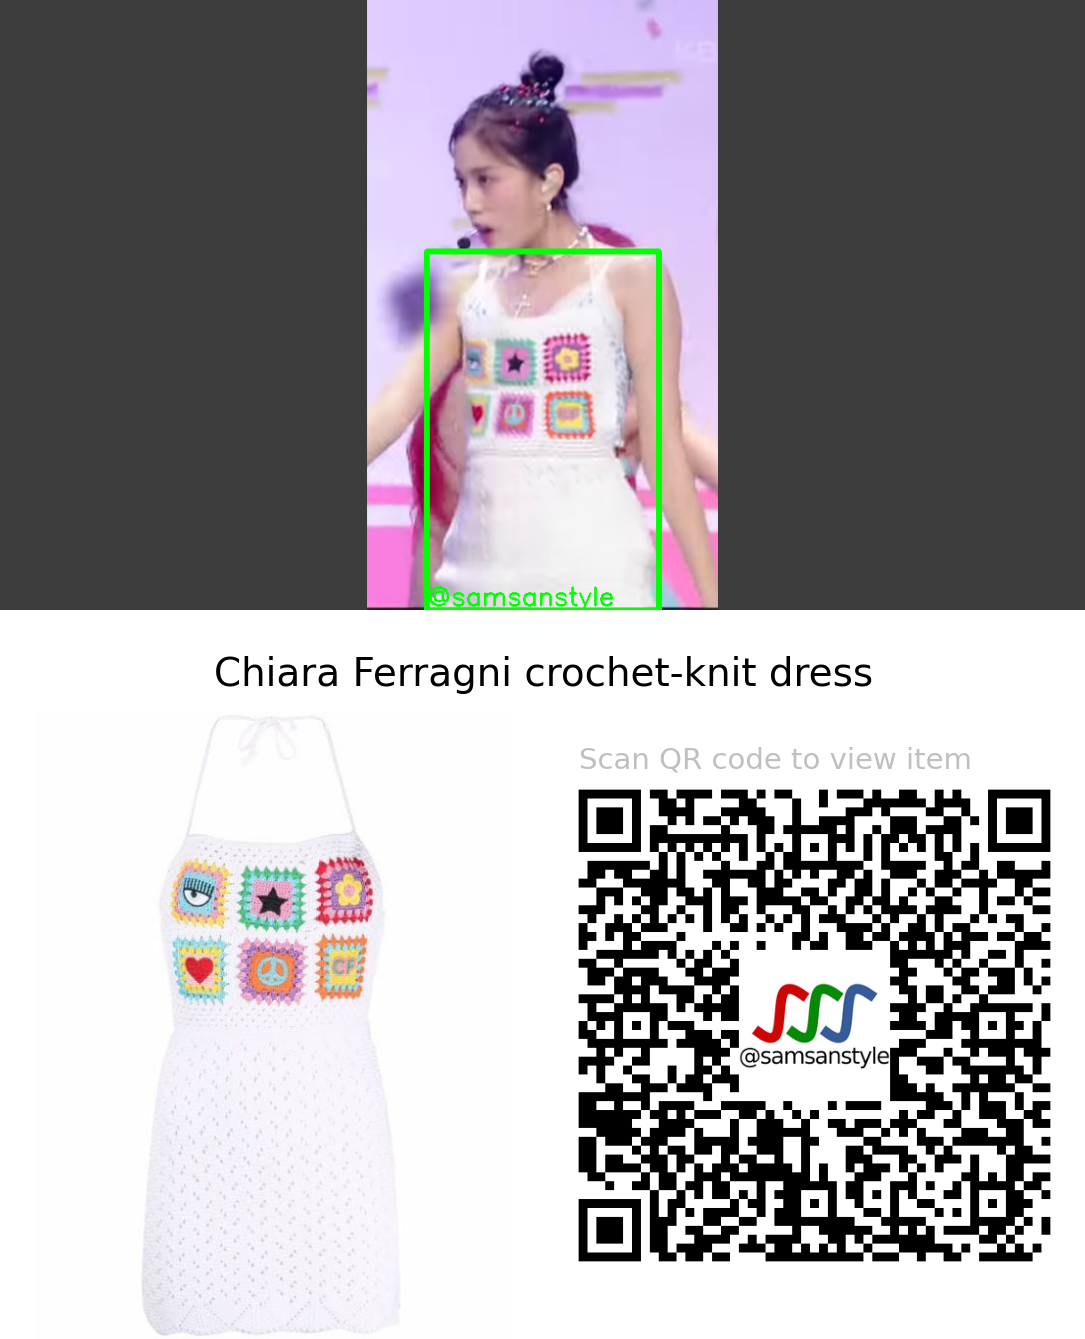 STAYC J | BEAUTIFUL MONSTER KBS Music Bank | Chiara Ferragni crochet-knit dress